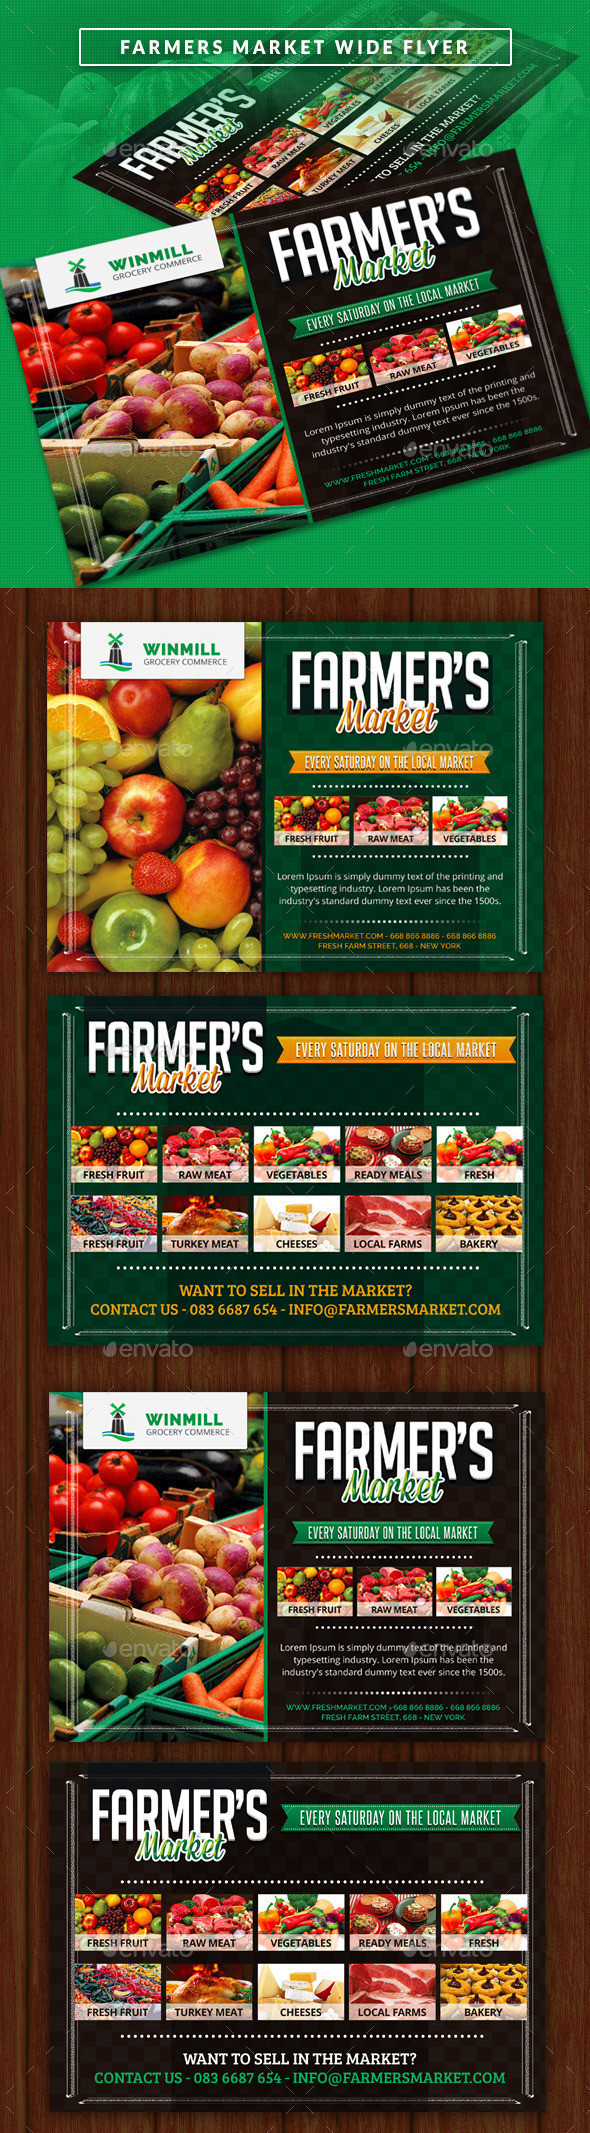 Farmers market wide flyer showcase